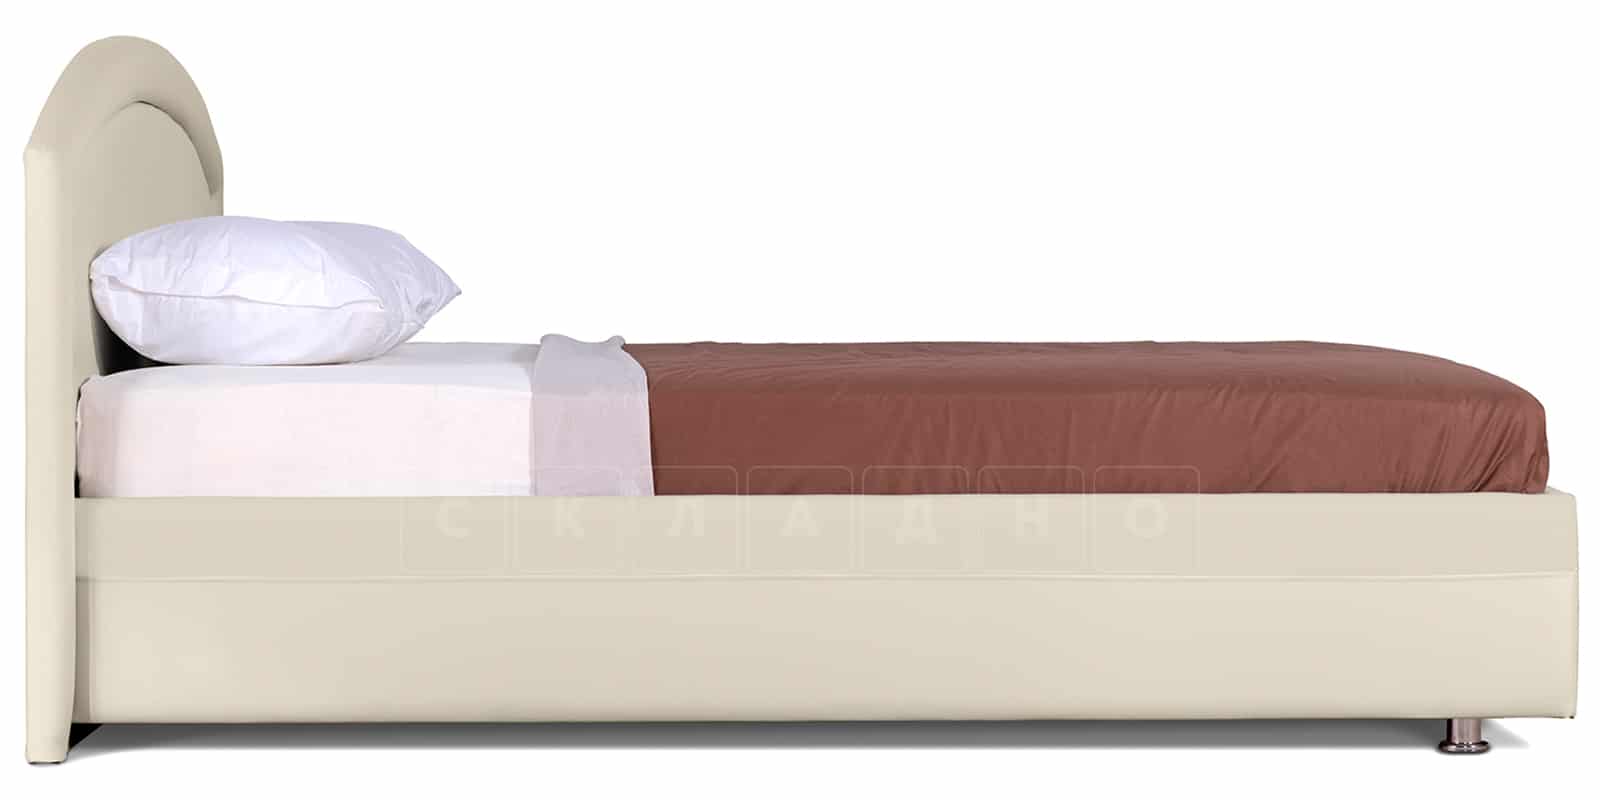 Мягкая кровать Малибу 160см экокожа бежевый вариант 8 фото 4 | интернет-магазин Складно